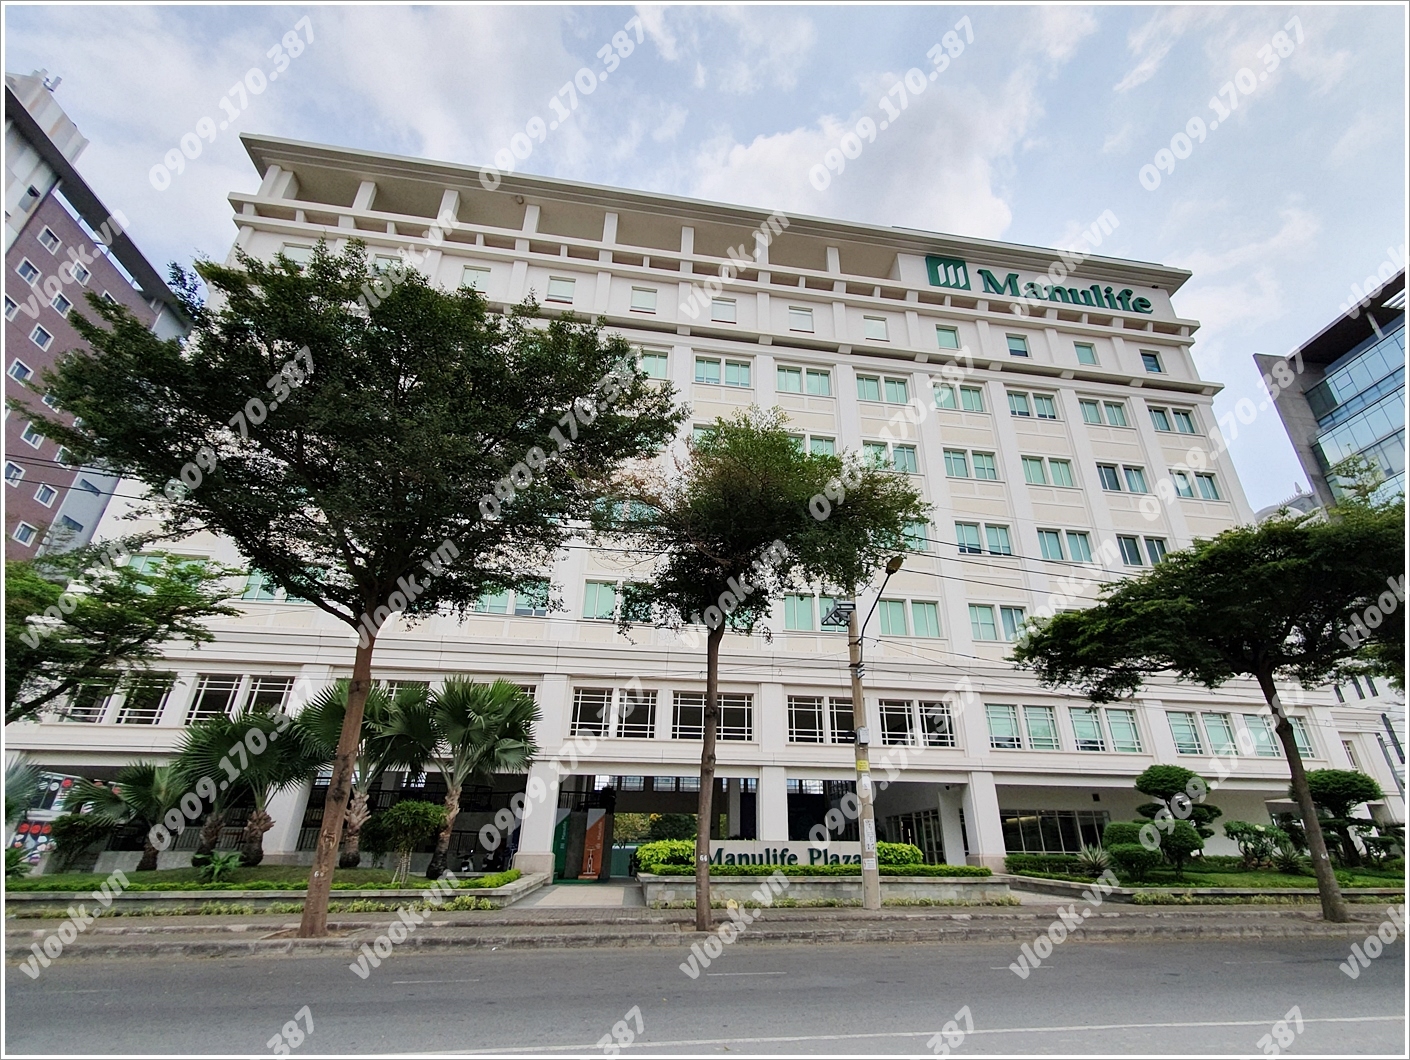 Mặt trước toàn cảnh oà cao ốc văn phòng cho thuê Manulife Plaza, đường Hoàng Văn Thái, quận 7, TP.HCM - vlook.vn